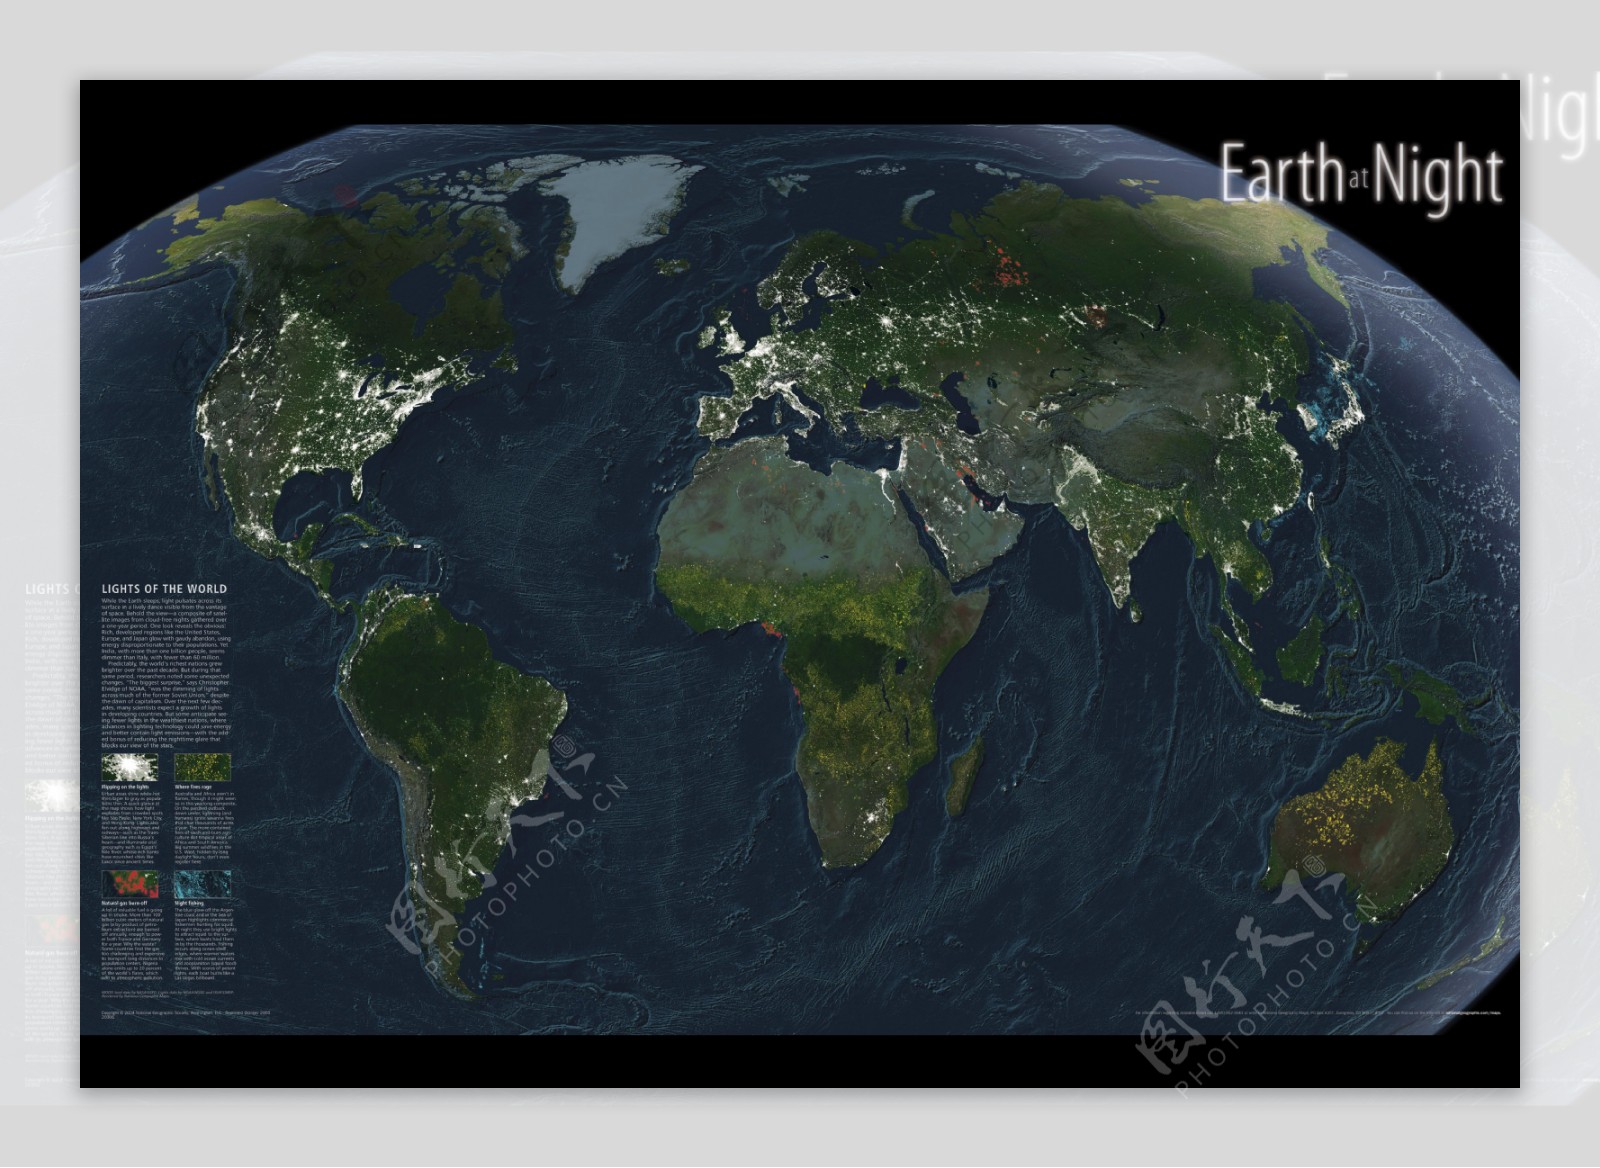 地球卫星图图片